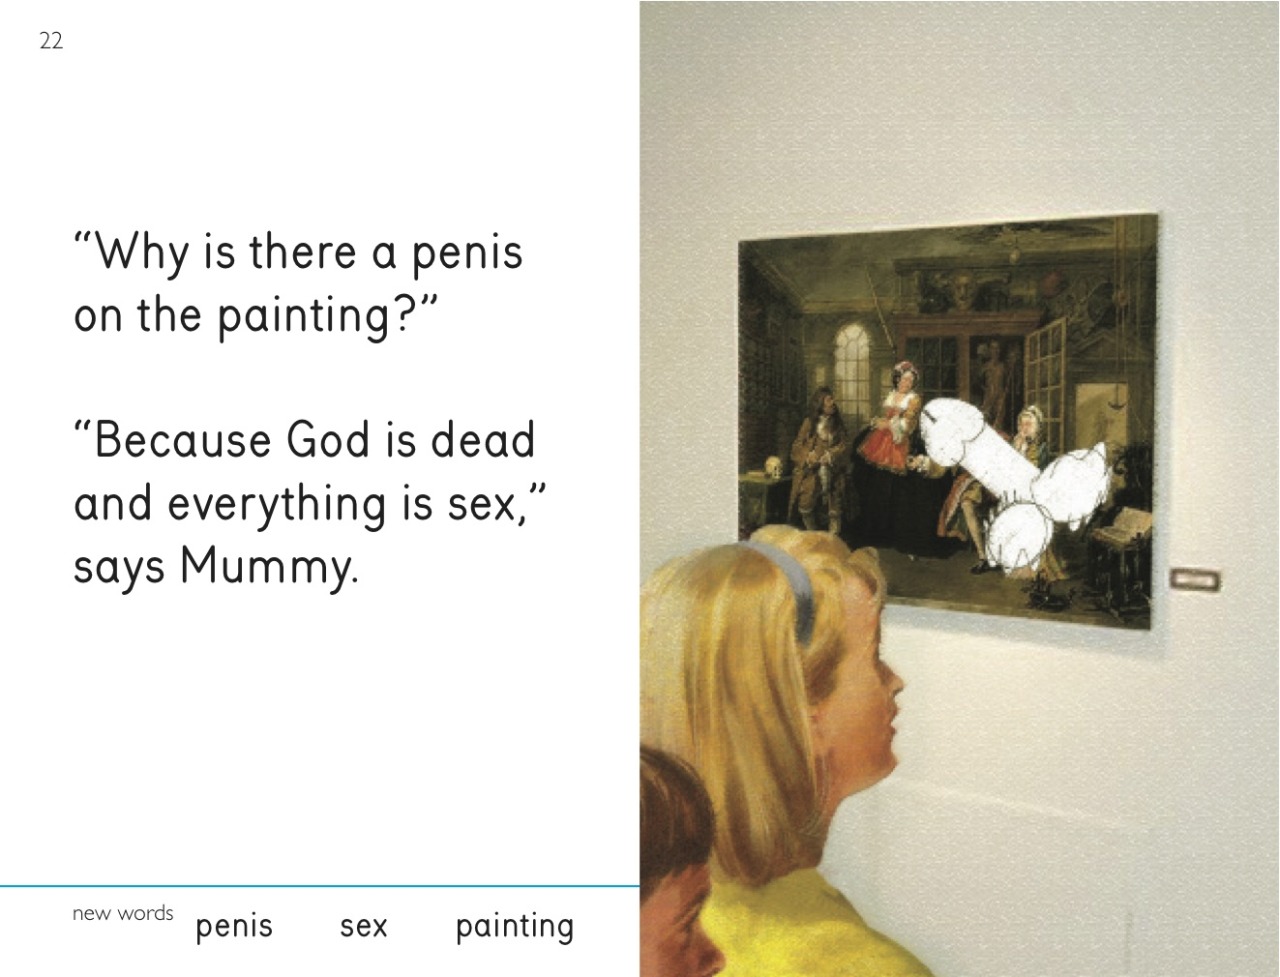 Mummy dearest